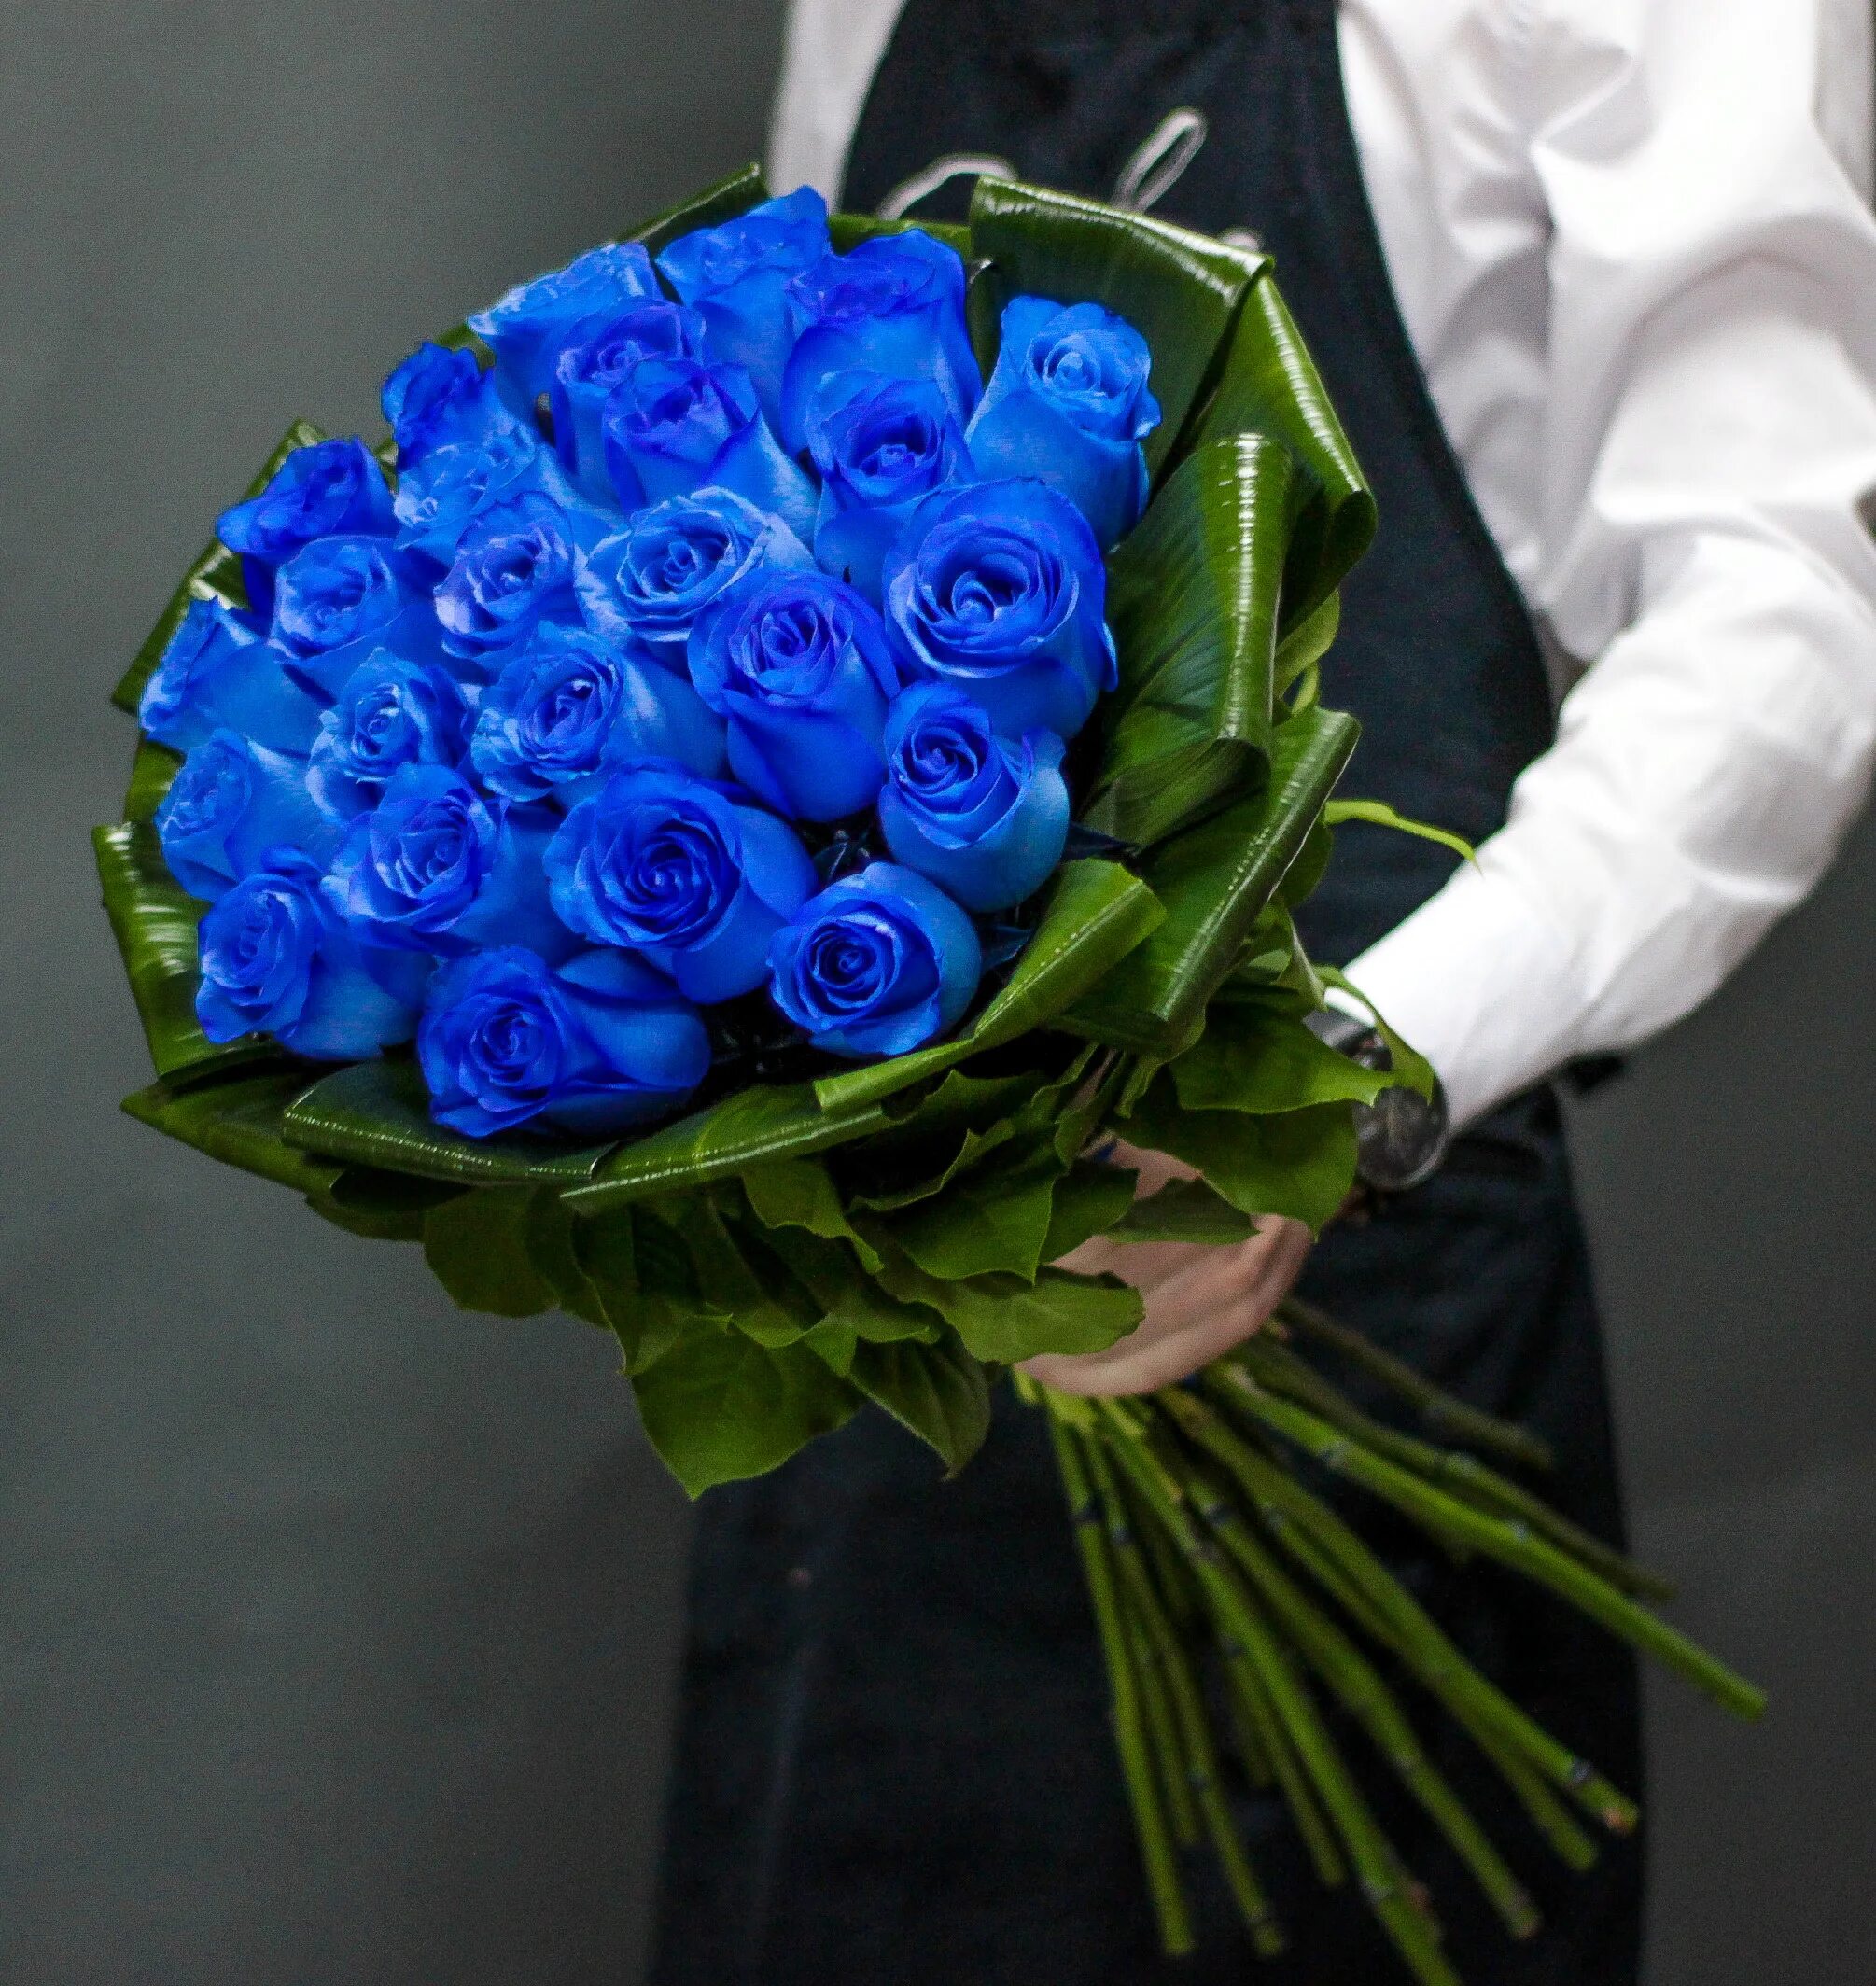 Синяя 25. Синие розы 25 шт. Букет синих роз. Голландские розы синие. Букет из синих роз.